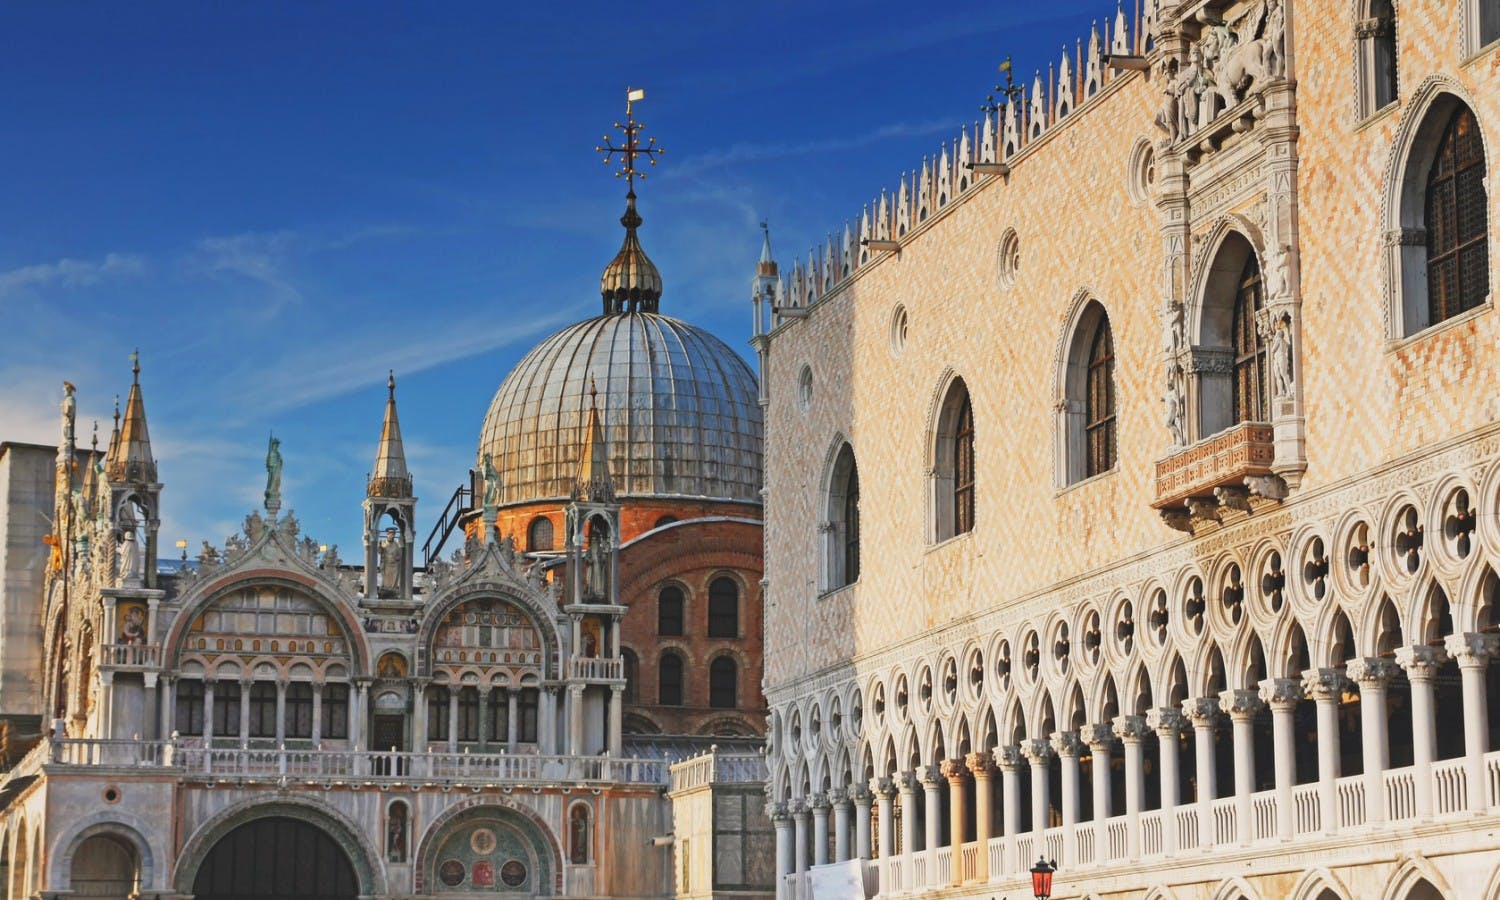 Venedig Ducale: morgonutflykt till fots med besök av Doges palats